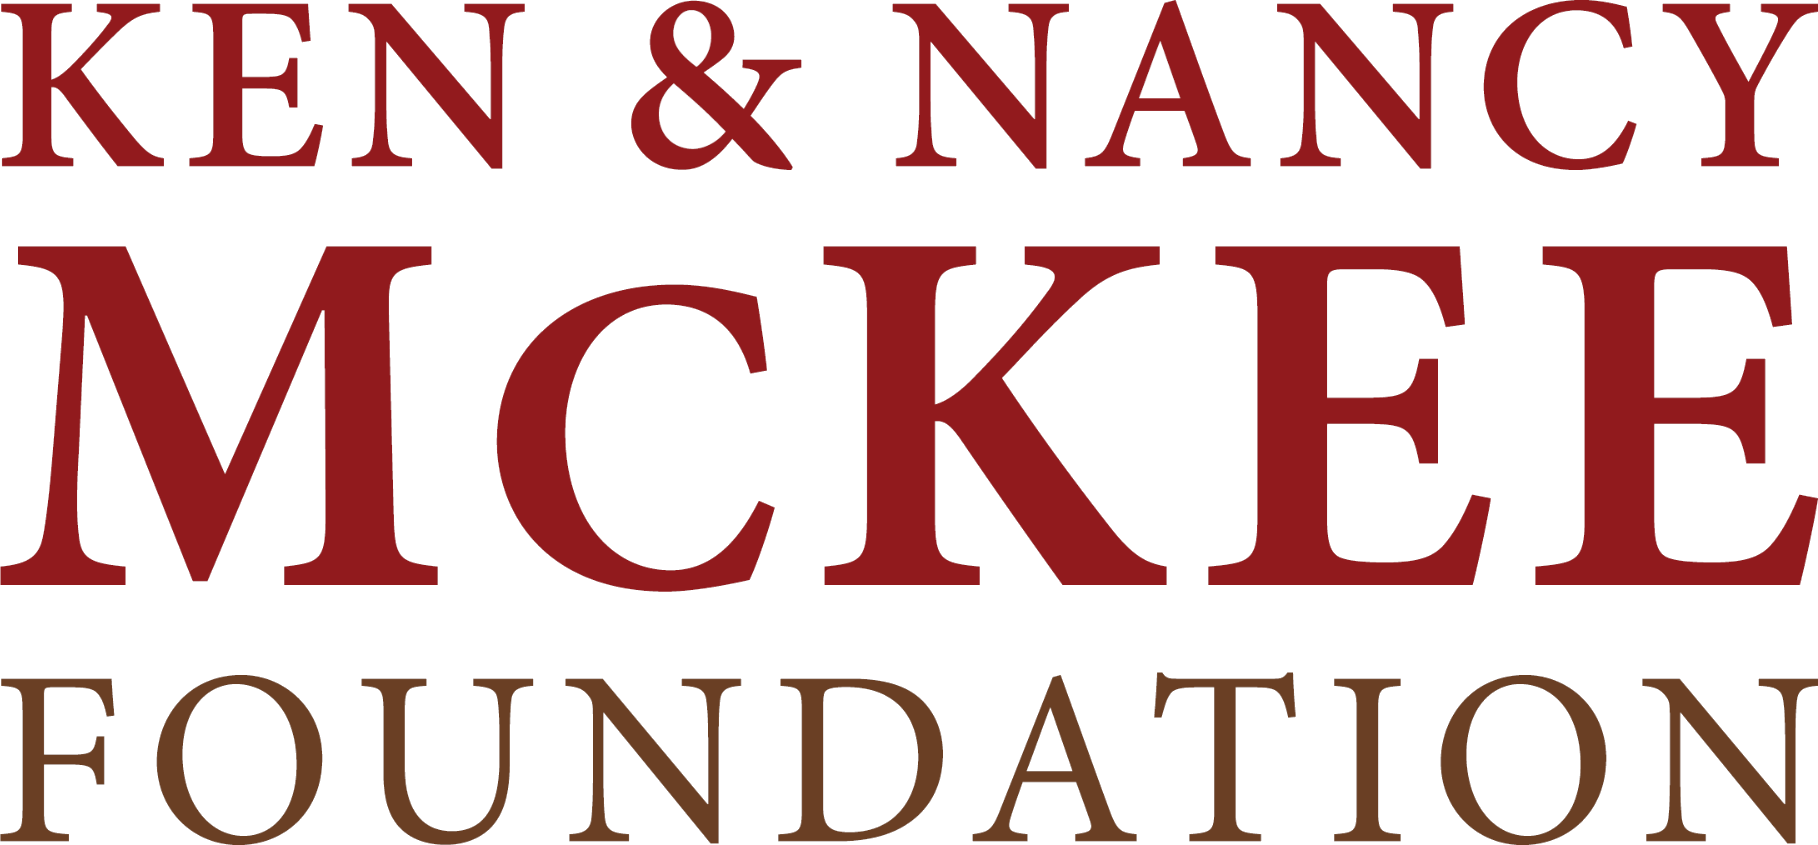 Ken & Nancy McKee Foundation